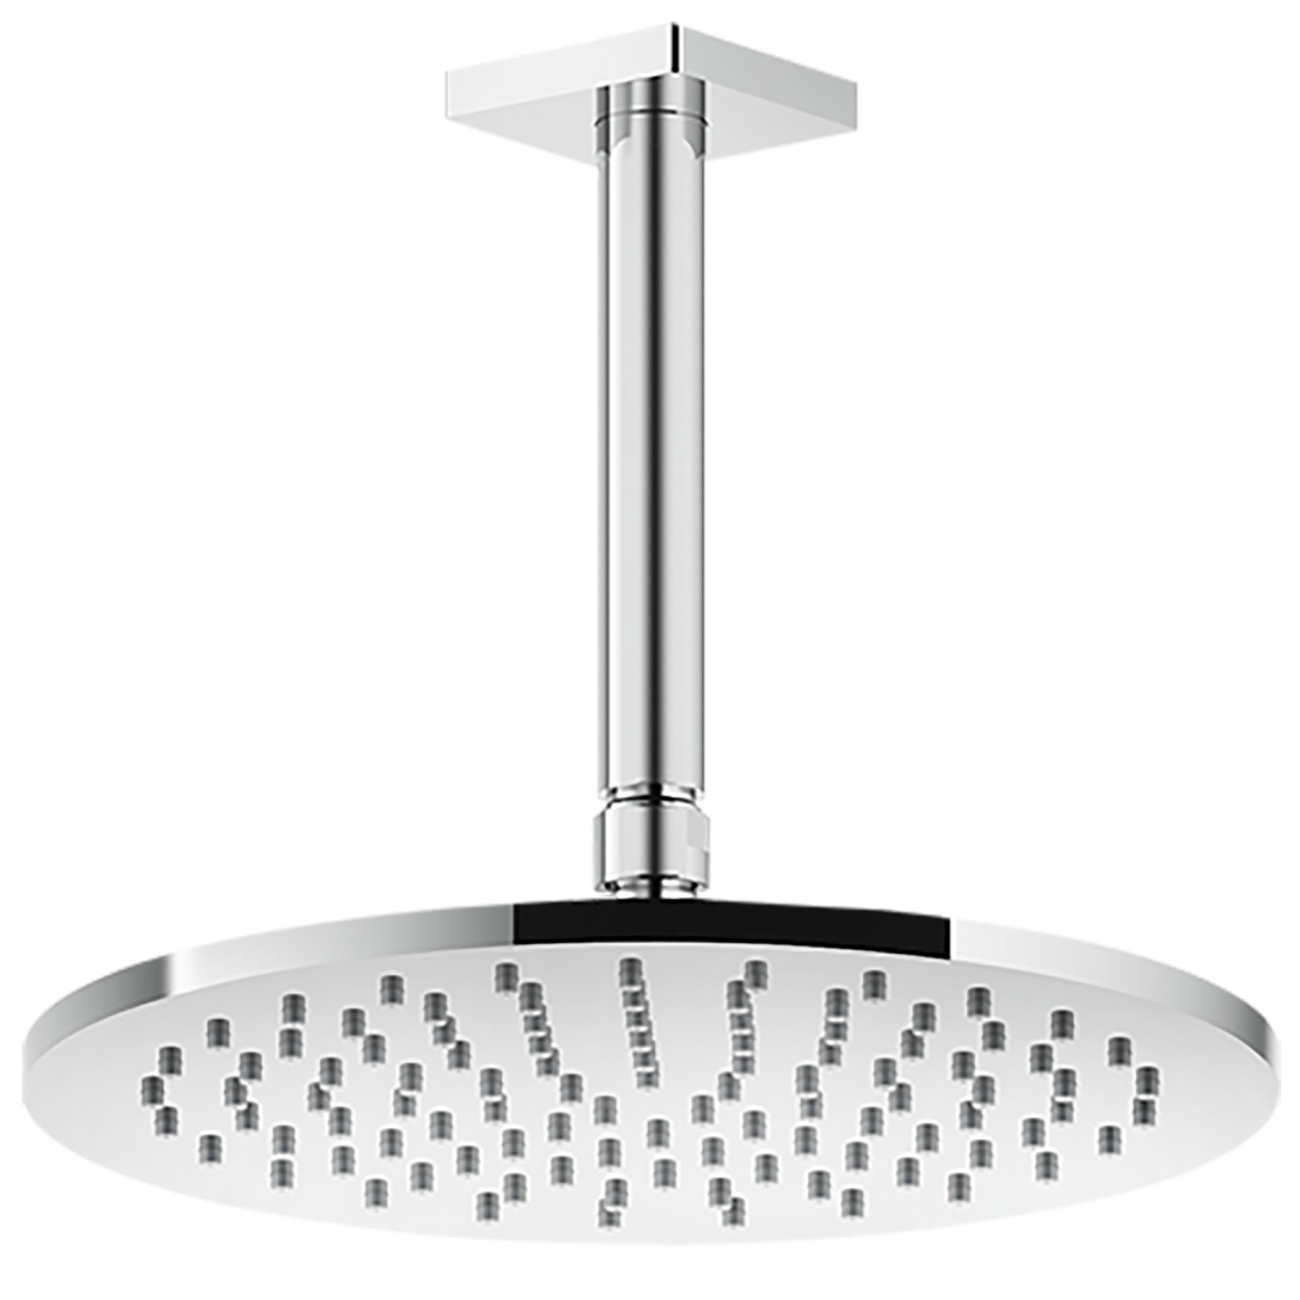 Gessi Rilievo ceiling-mounted showerhead